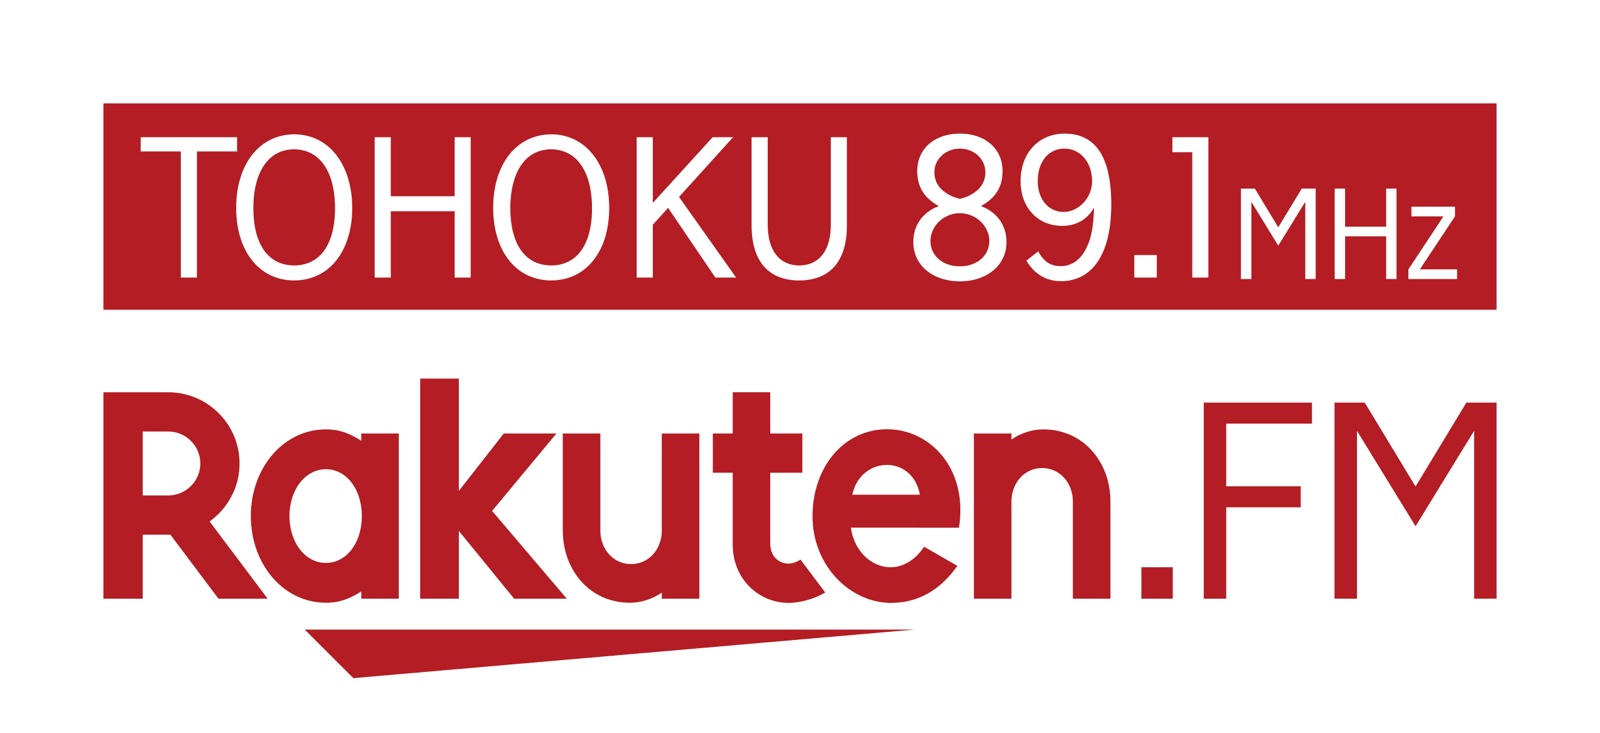 Rakuten.FM TOHOKUラジオに生出演いたしました